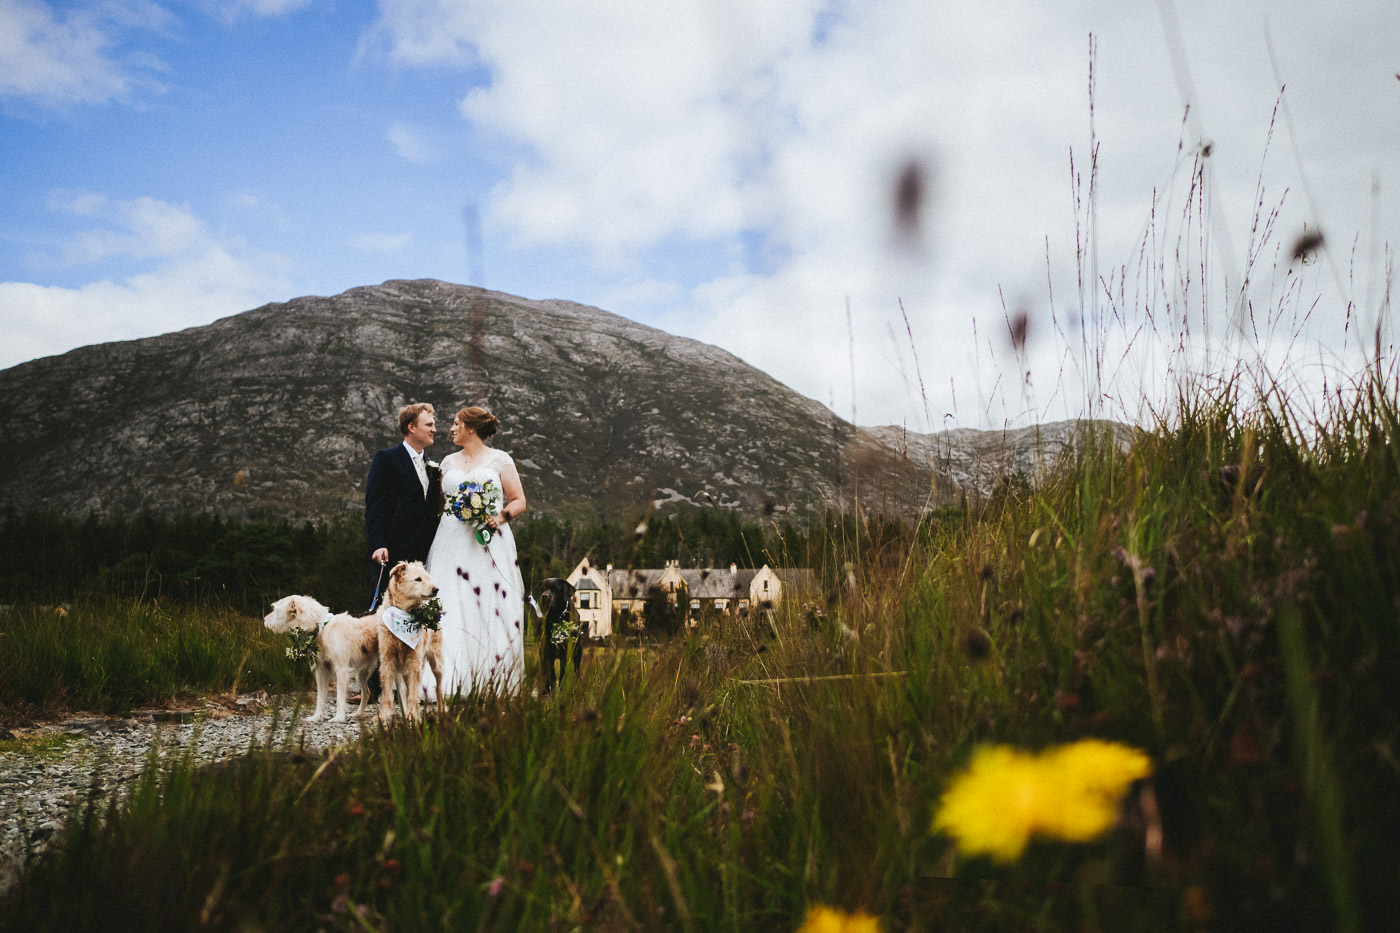 Heiraten in Irland, Brautpaar am Lough Inagh in Connemara, mit Lough Inagh Lodge und Bergen im Hintergrund - Hochzeitsfotograf Irland Brautrausch